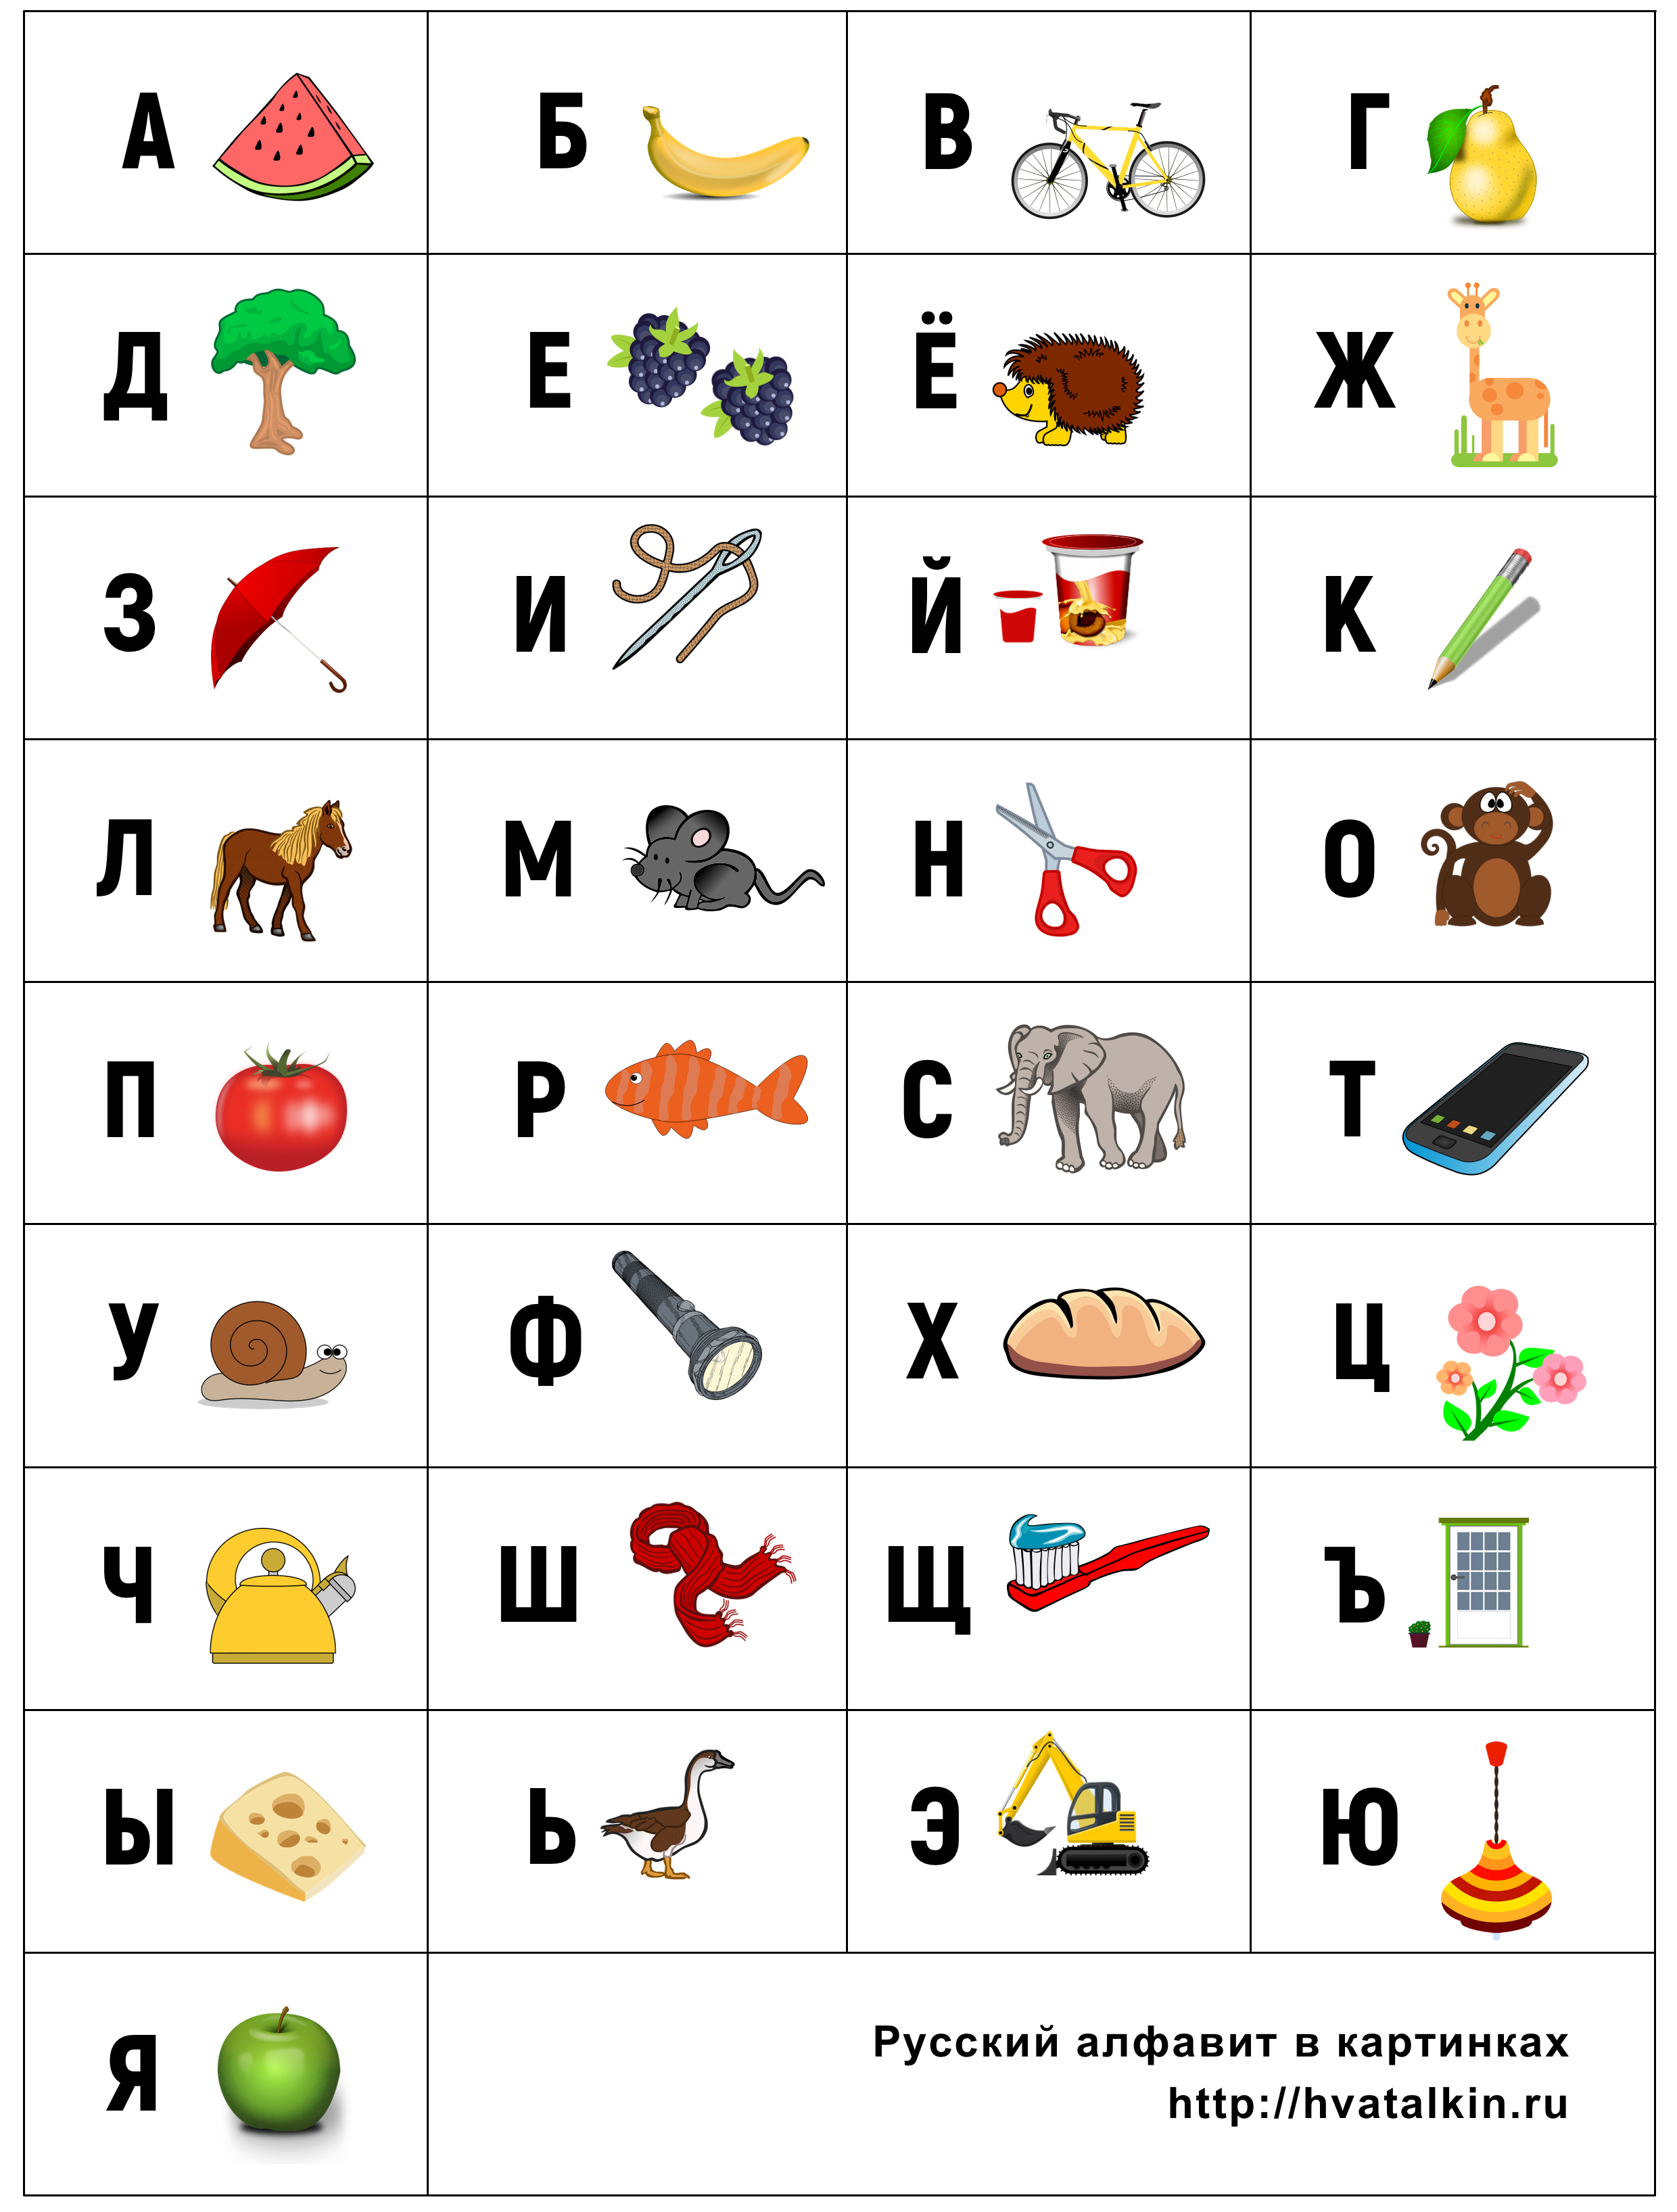 Как читать на английском русскими буквами по фото бесплатно